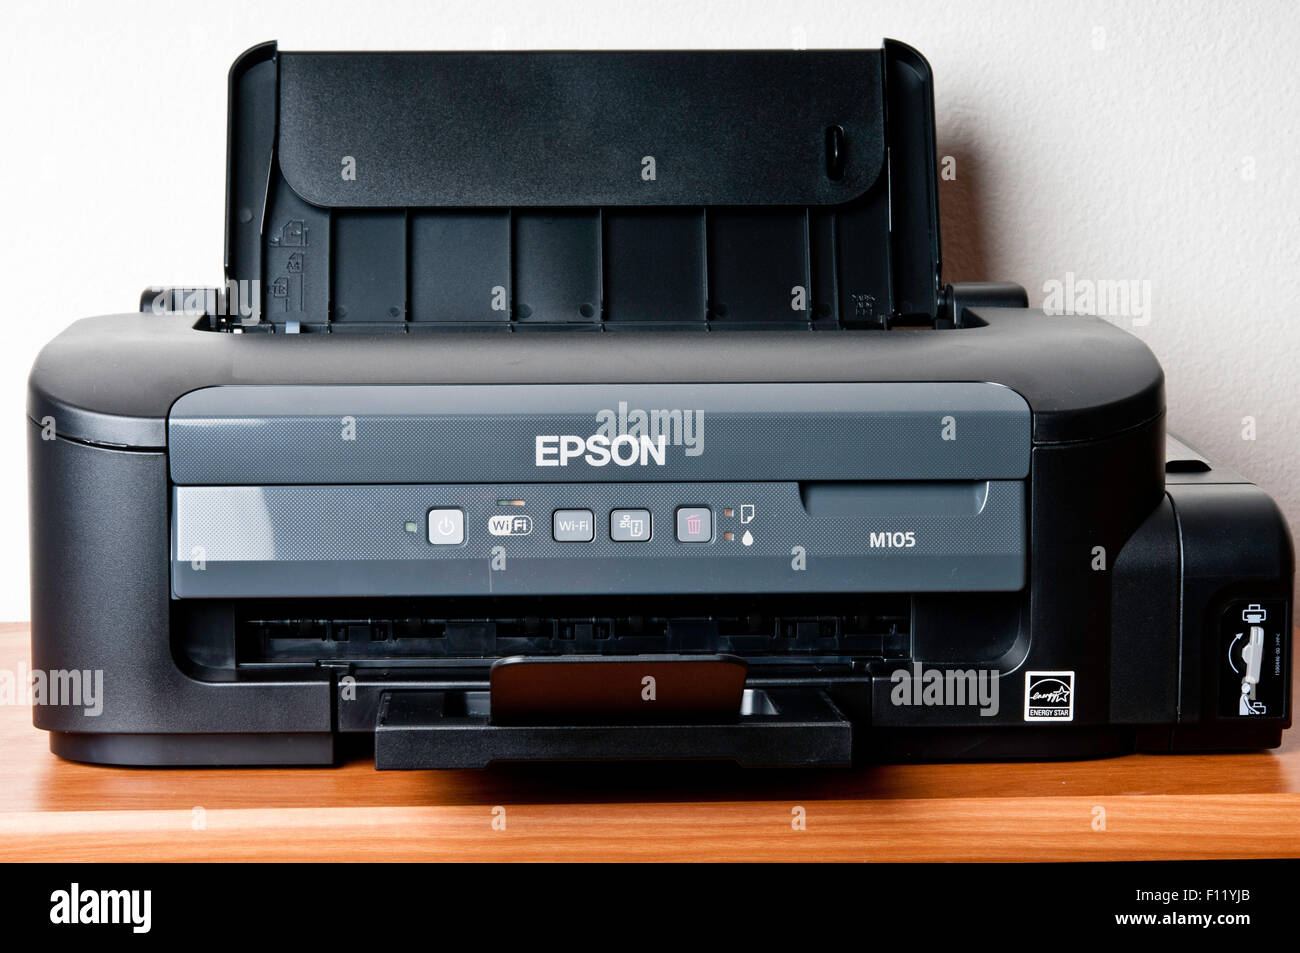 Epson M105 monochrome printer Stock Photo